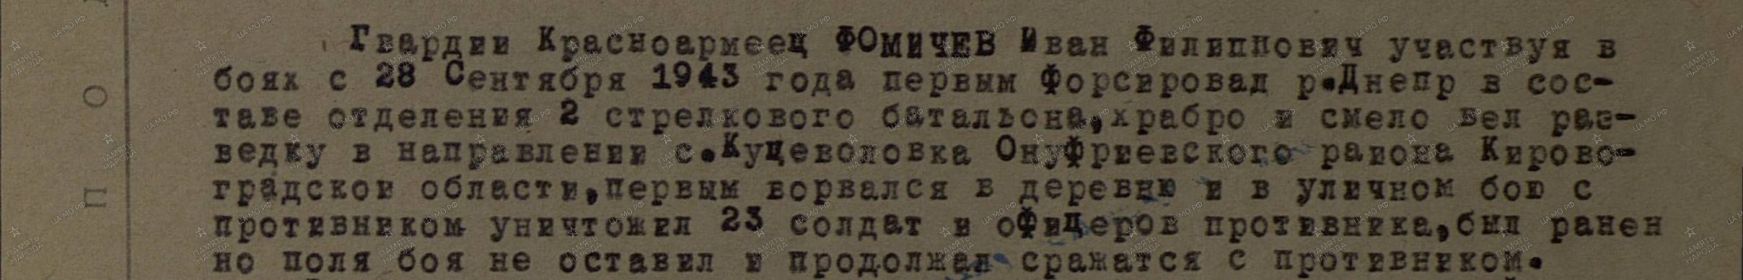 Орден Красной Звезды, приказ 62 гв сд от 08.10.1943г.